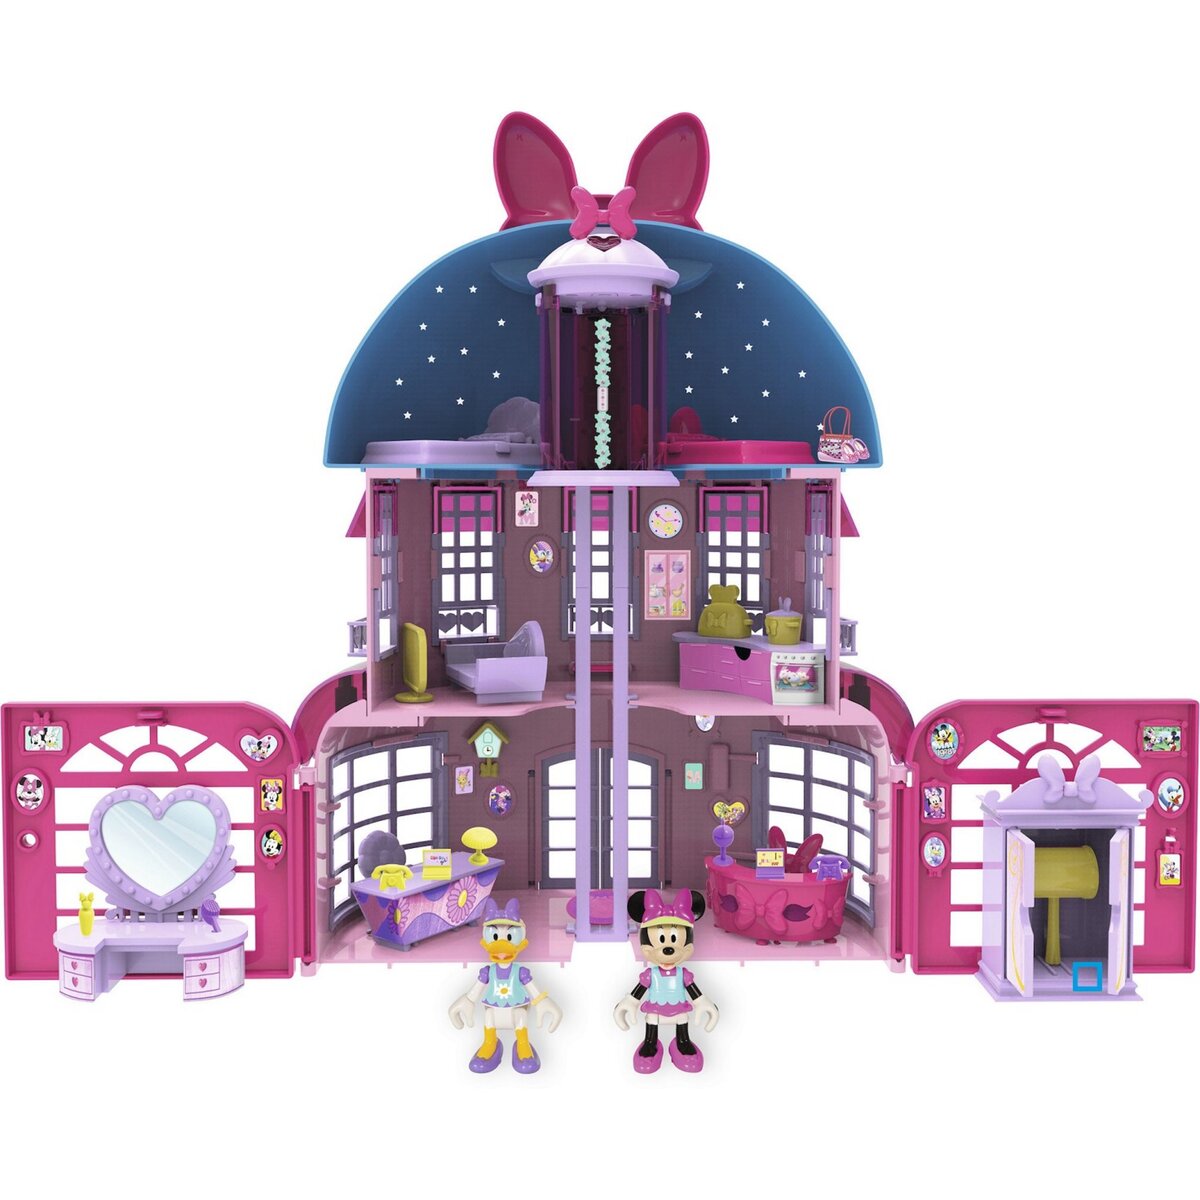 Petite maison Minnie Mouse